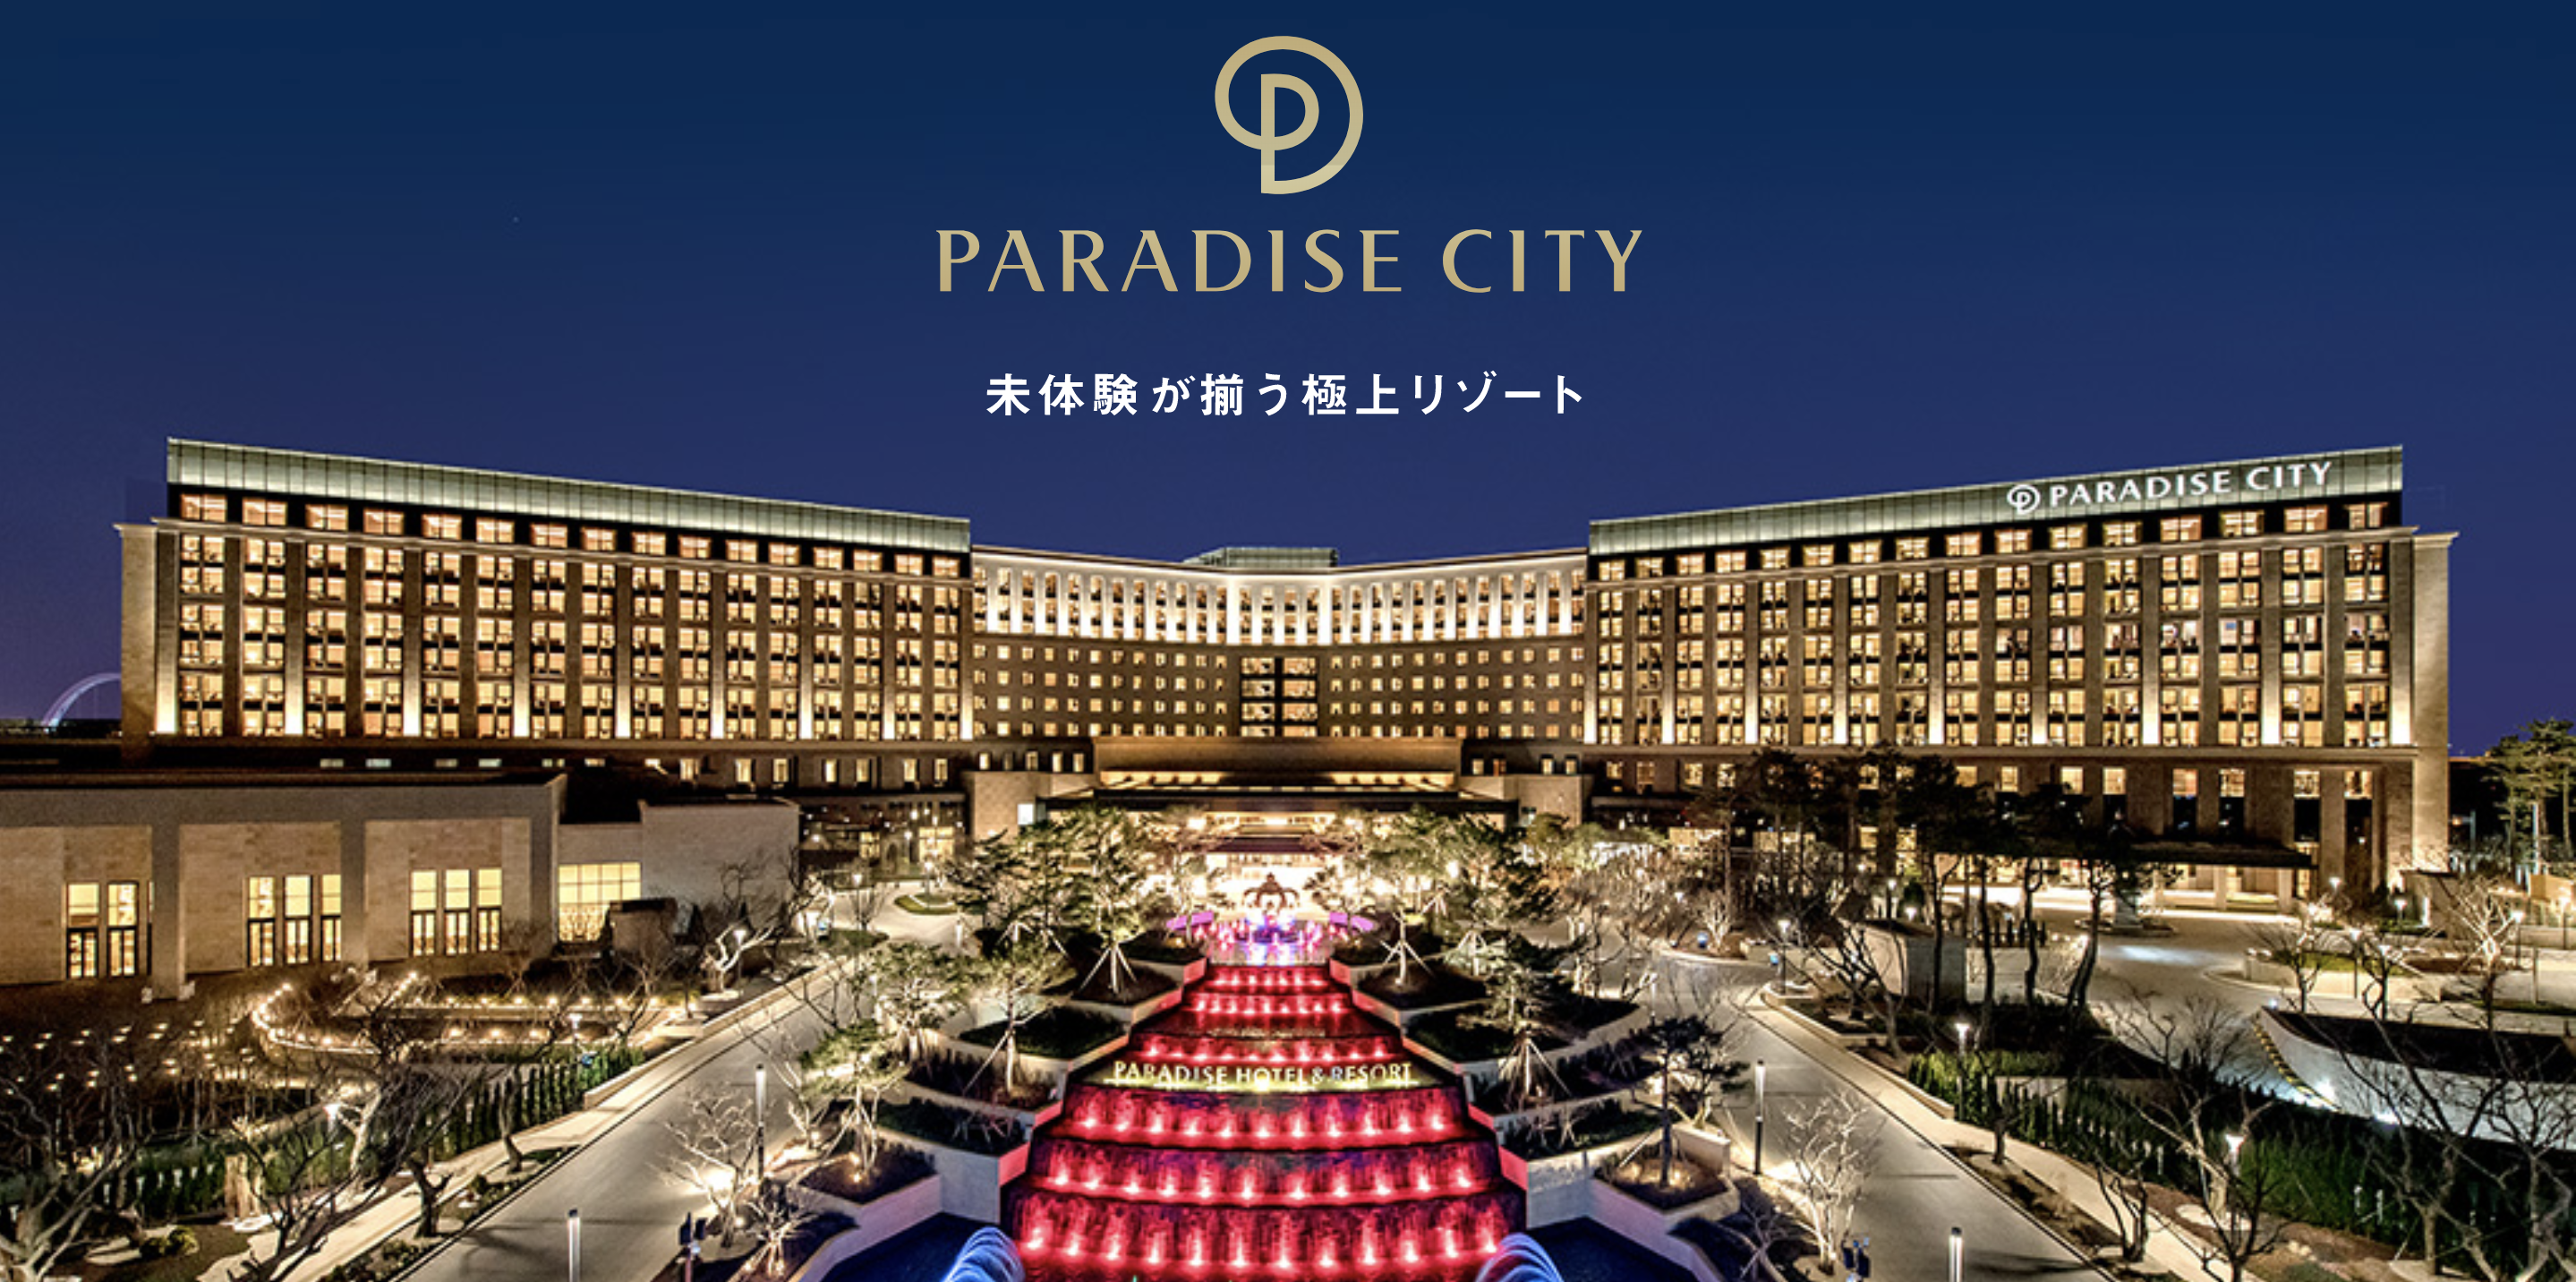 仁川パラダイスシティにお得に宿泊するには公式サイトの日本人限定キャンペーンを利用がオススメ | カジノトラベラー総統のブログ